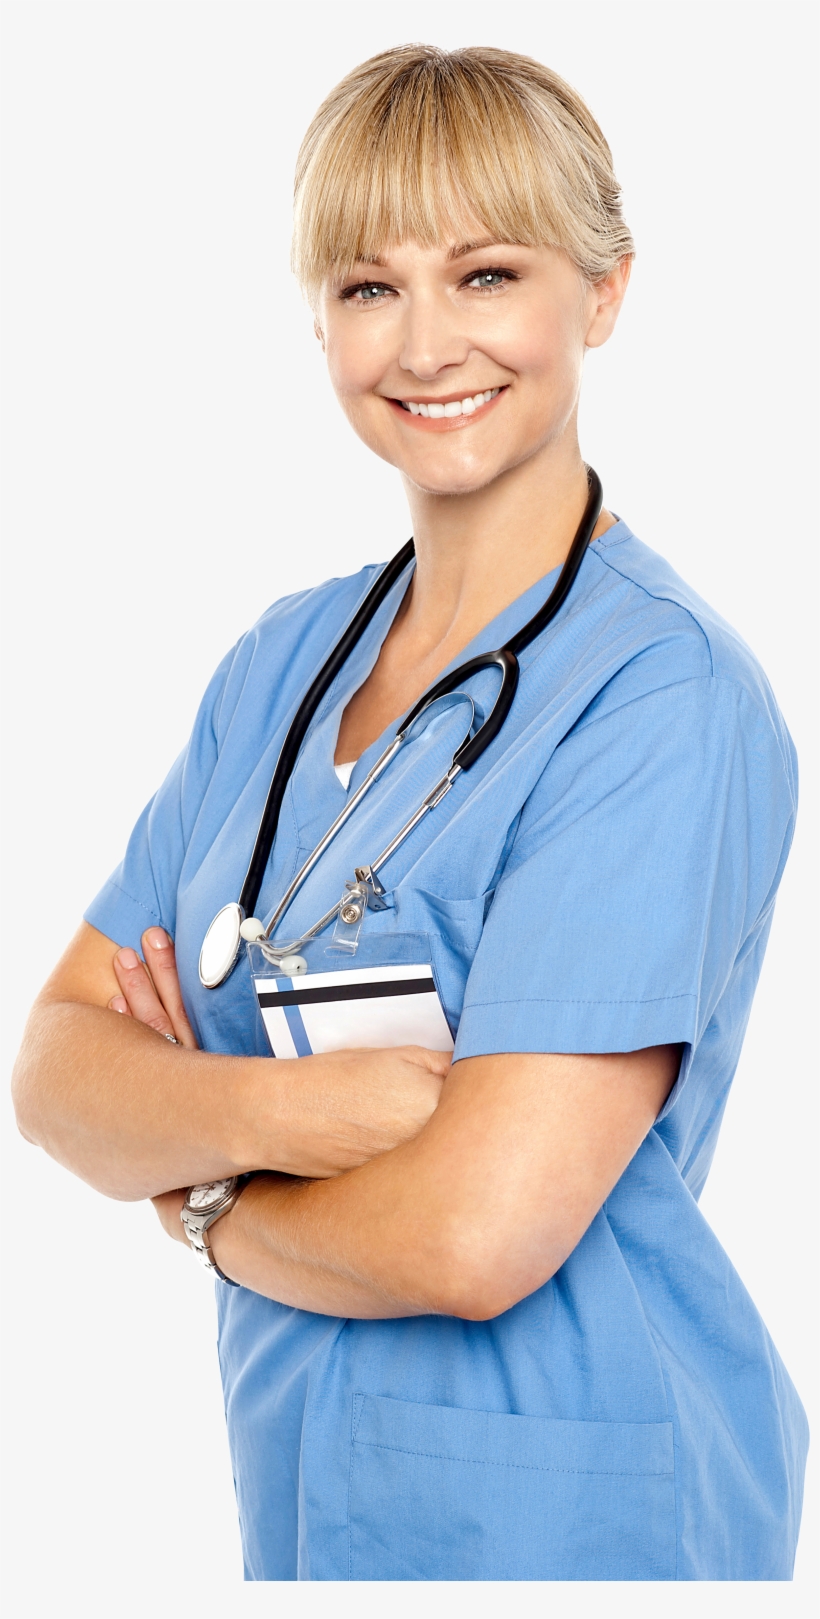 Female Doctor Png Image - Nursing, transparent png #273903